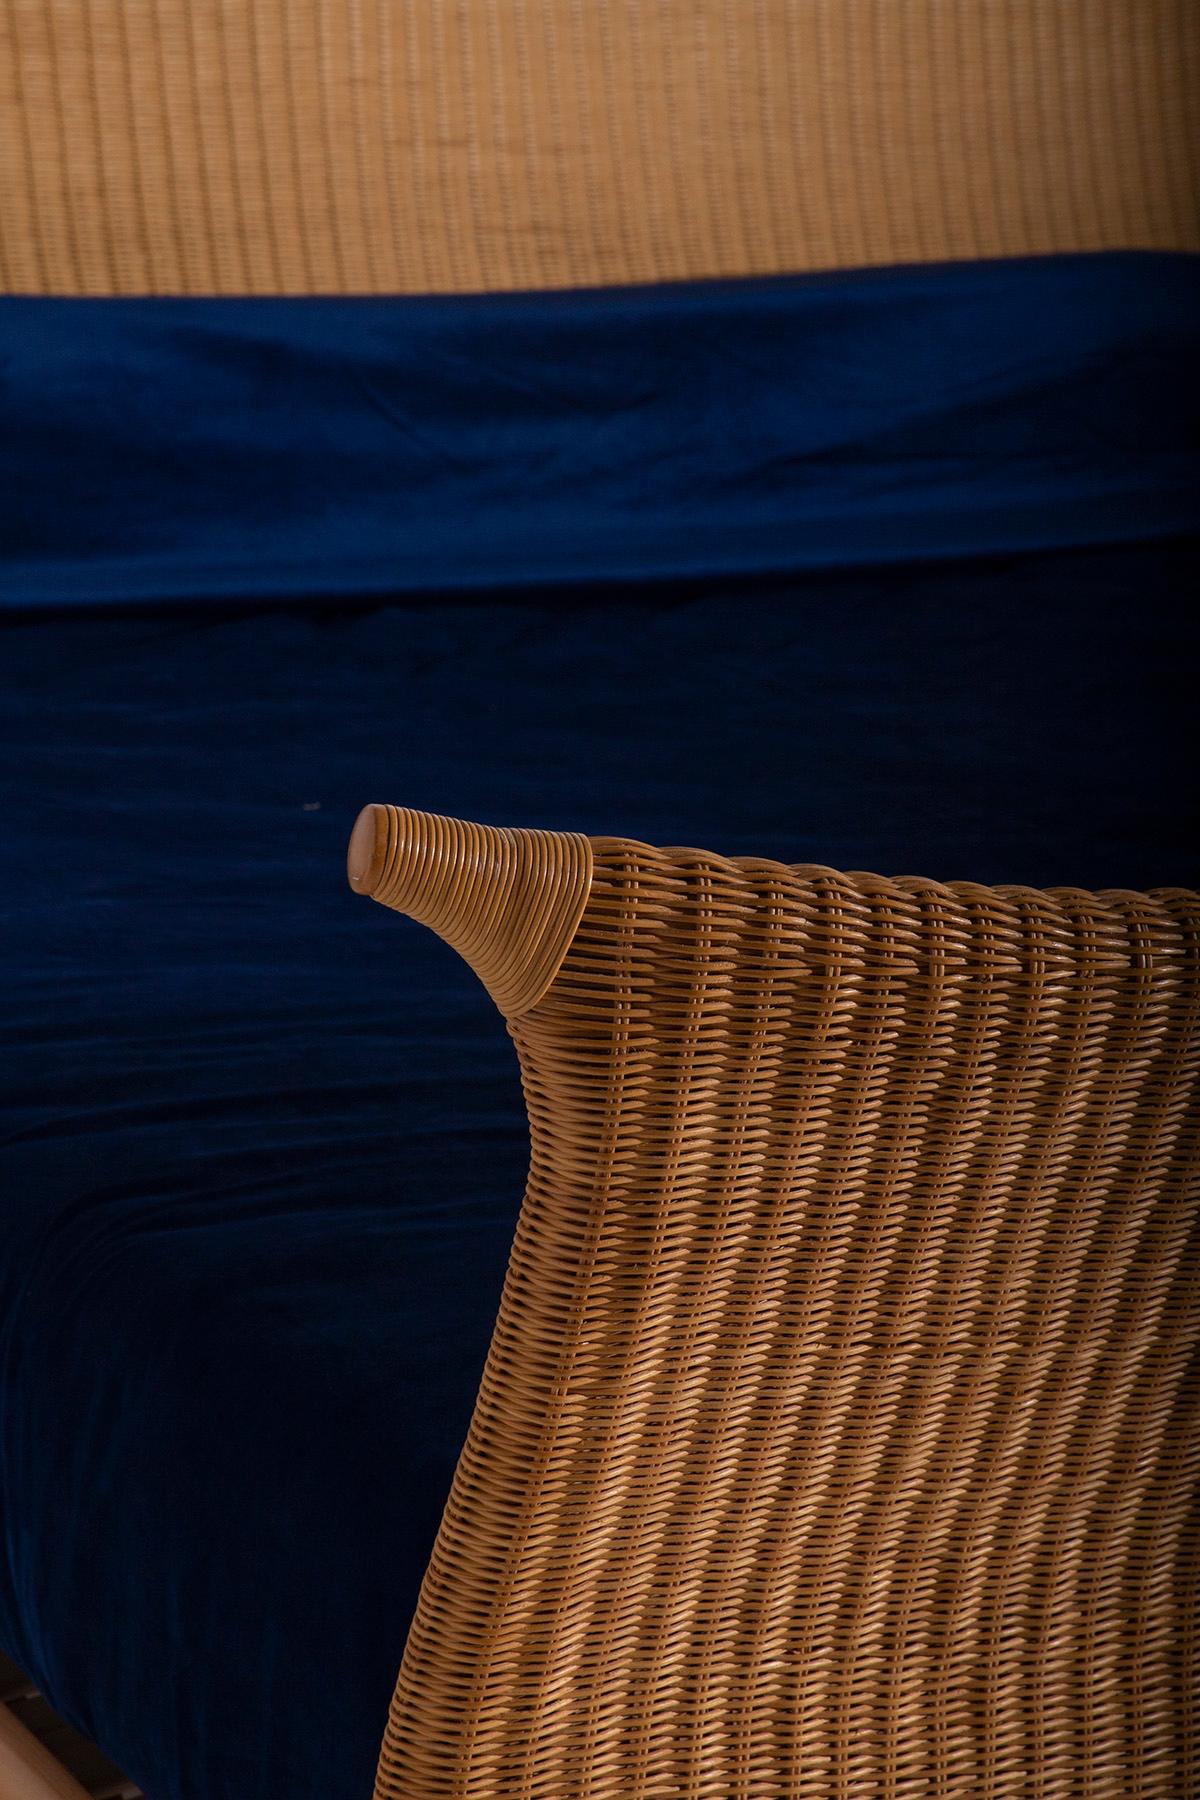 Italian rattan bed by PierAntonio Bonacina, with label 5